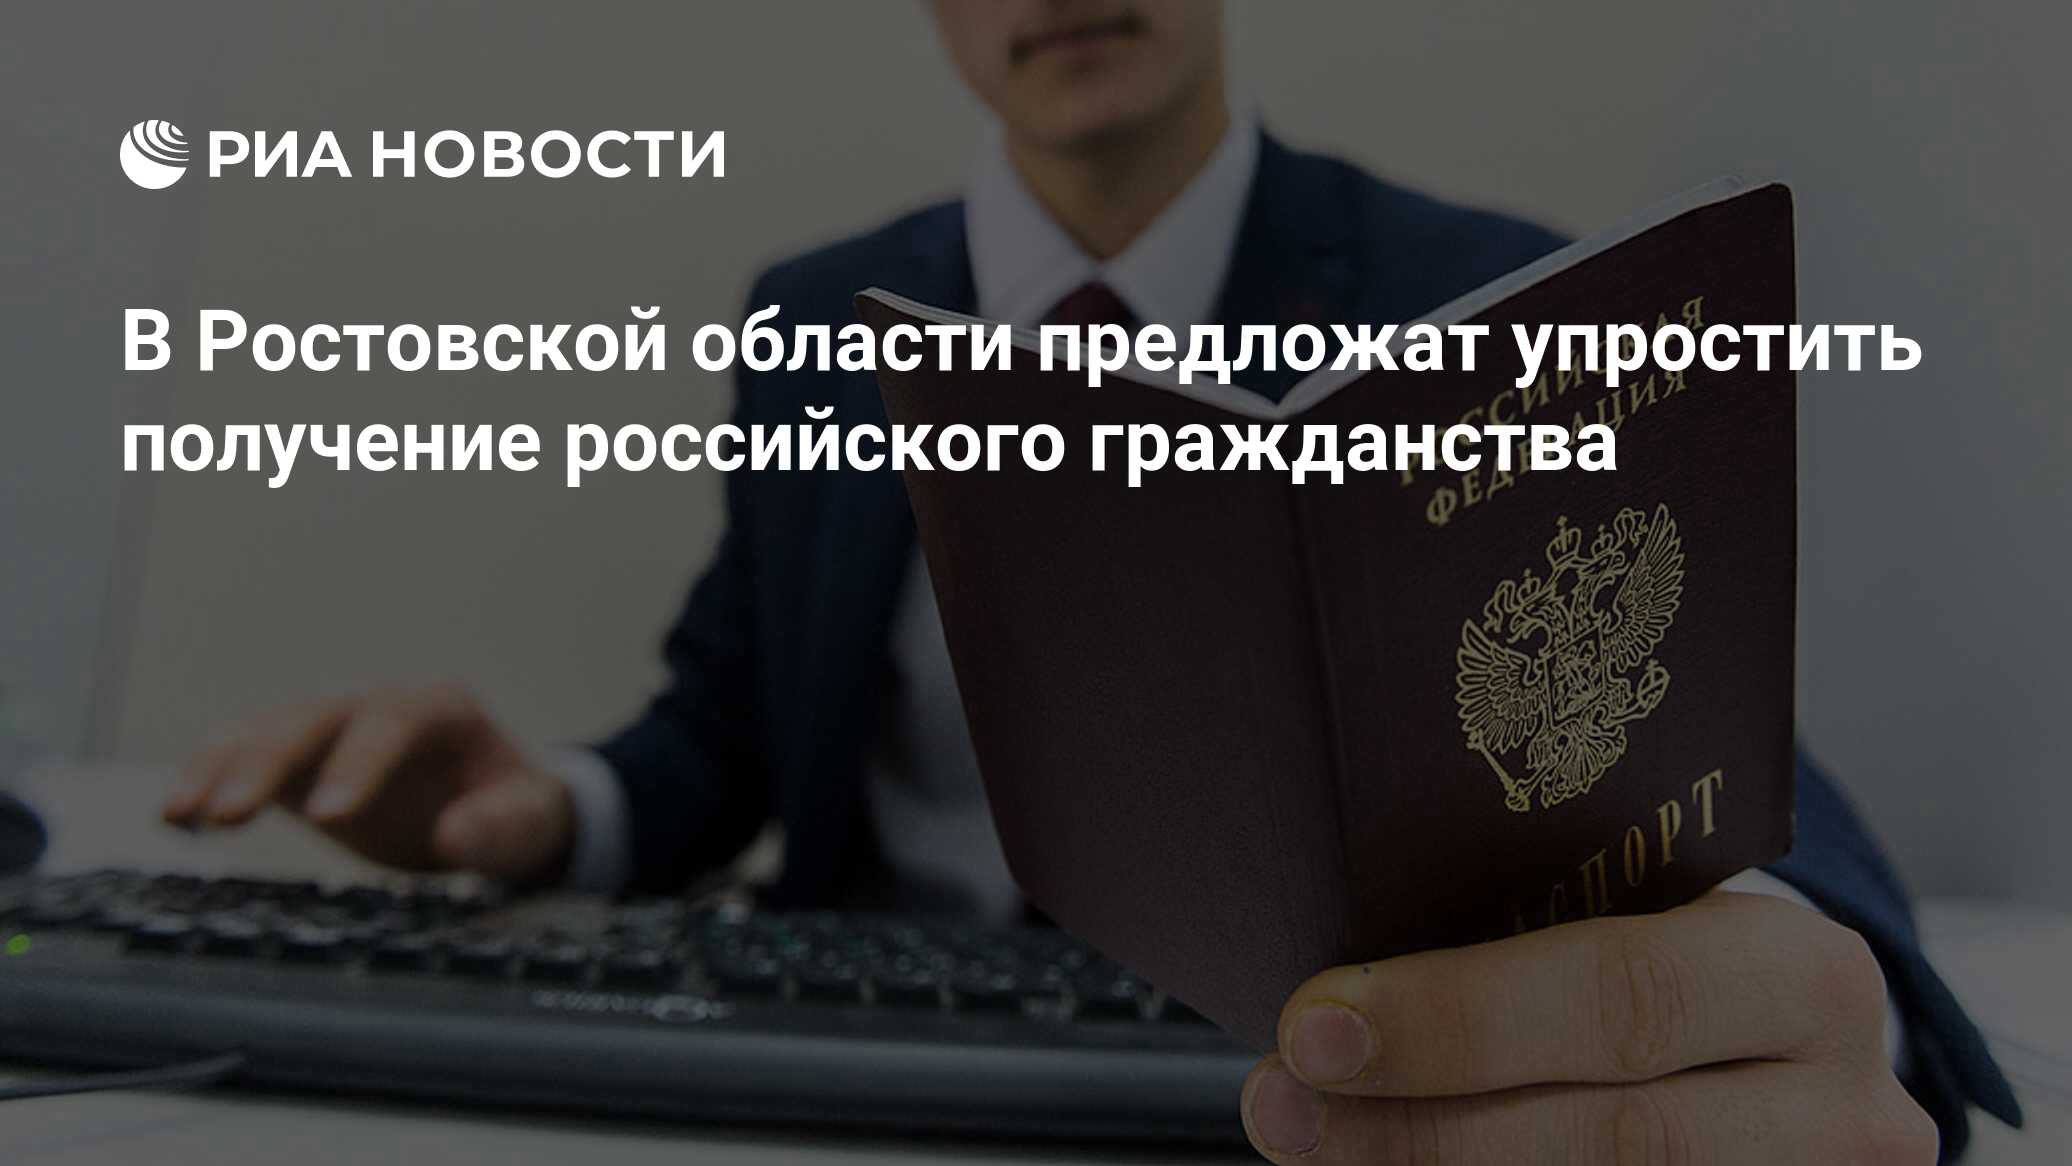 Вышли из российского гражданства. Российское гражданство фото. Власти информируют фото. 700 Тысяч иностранцев получили российское гражданство в 2022 году.